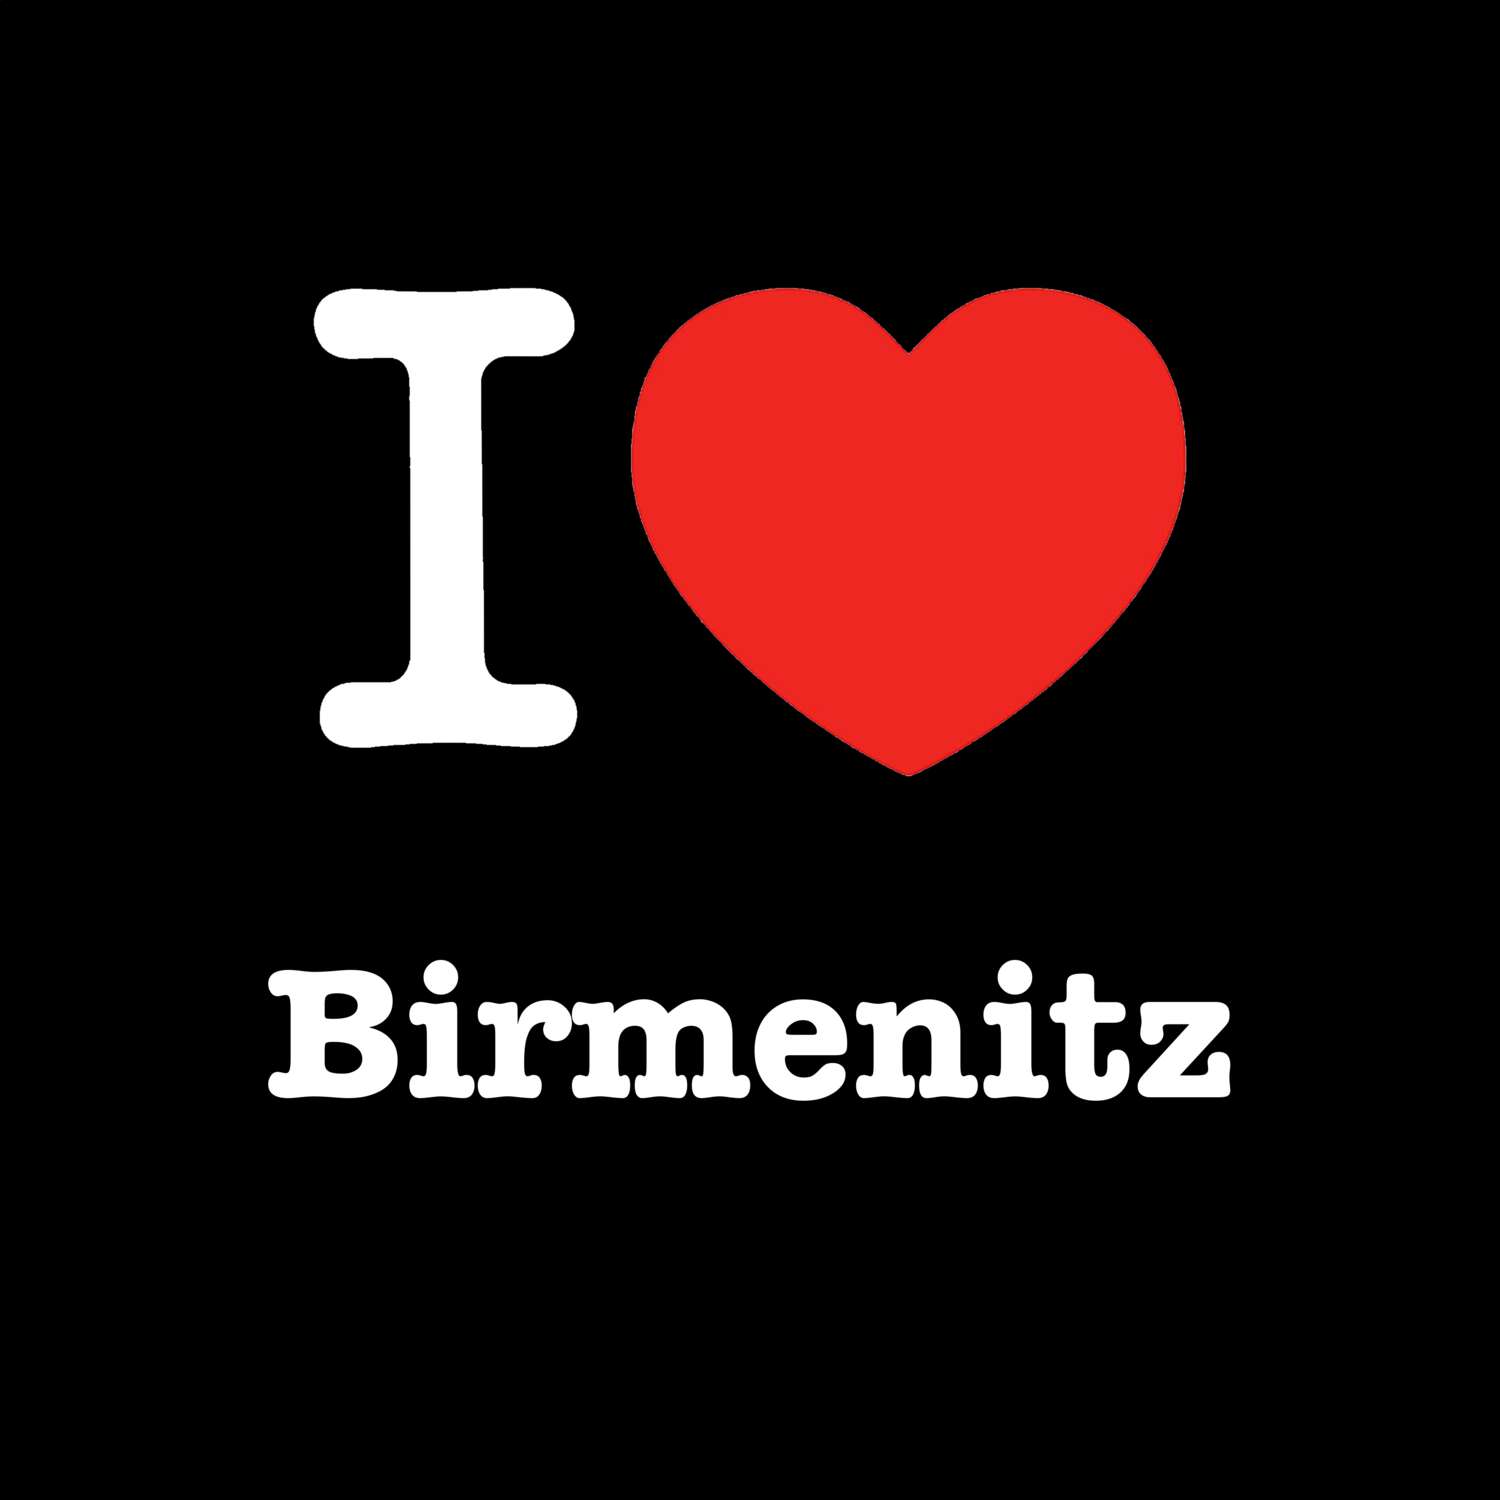 Birmenitz T-Shirt »I love«